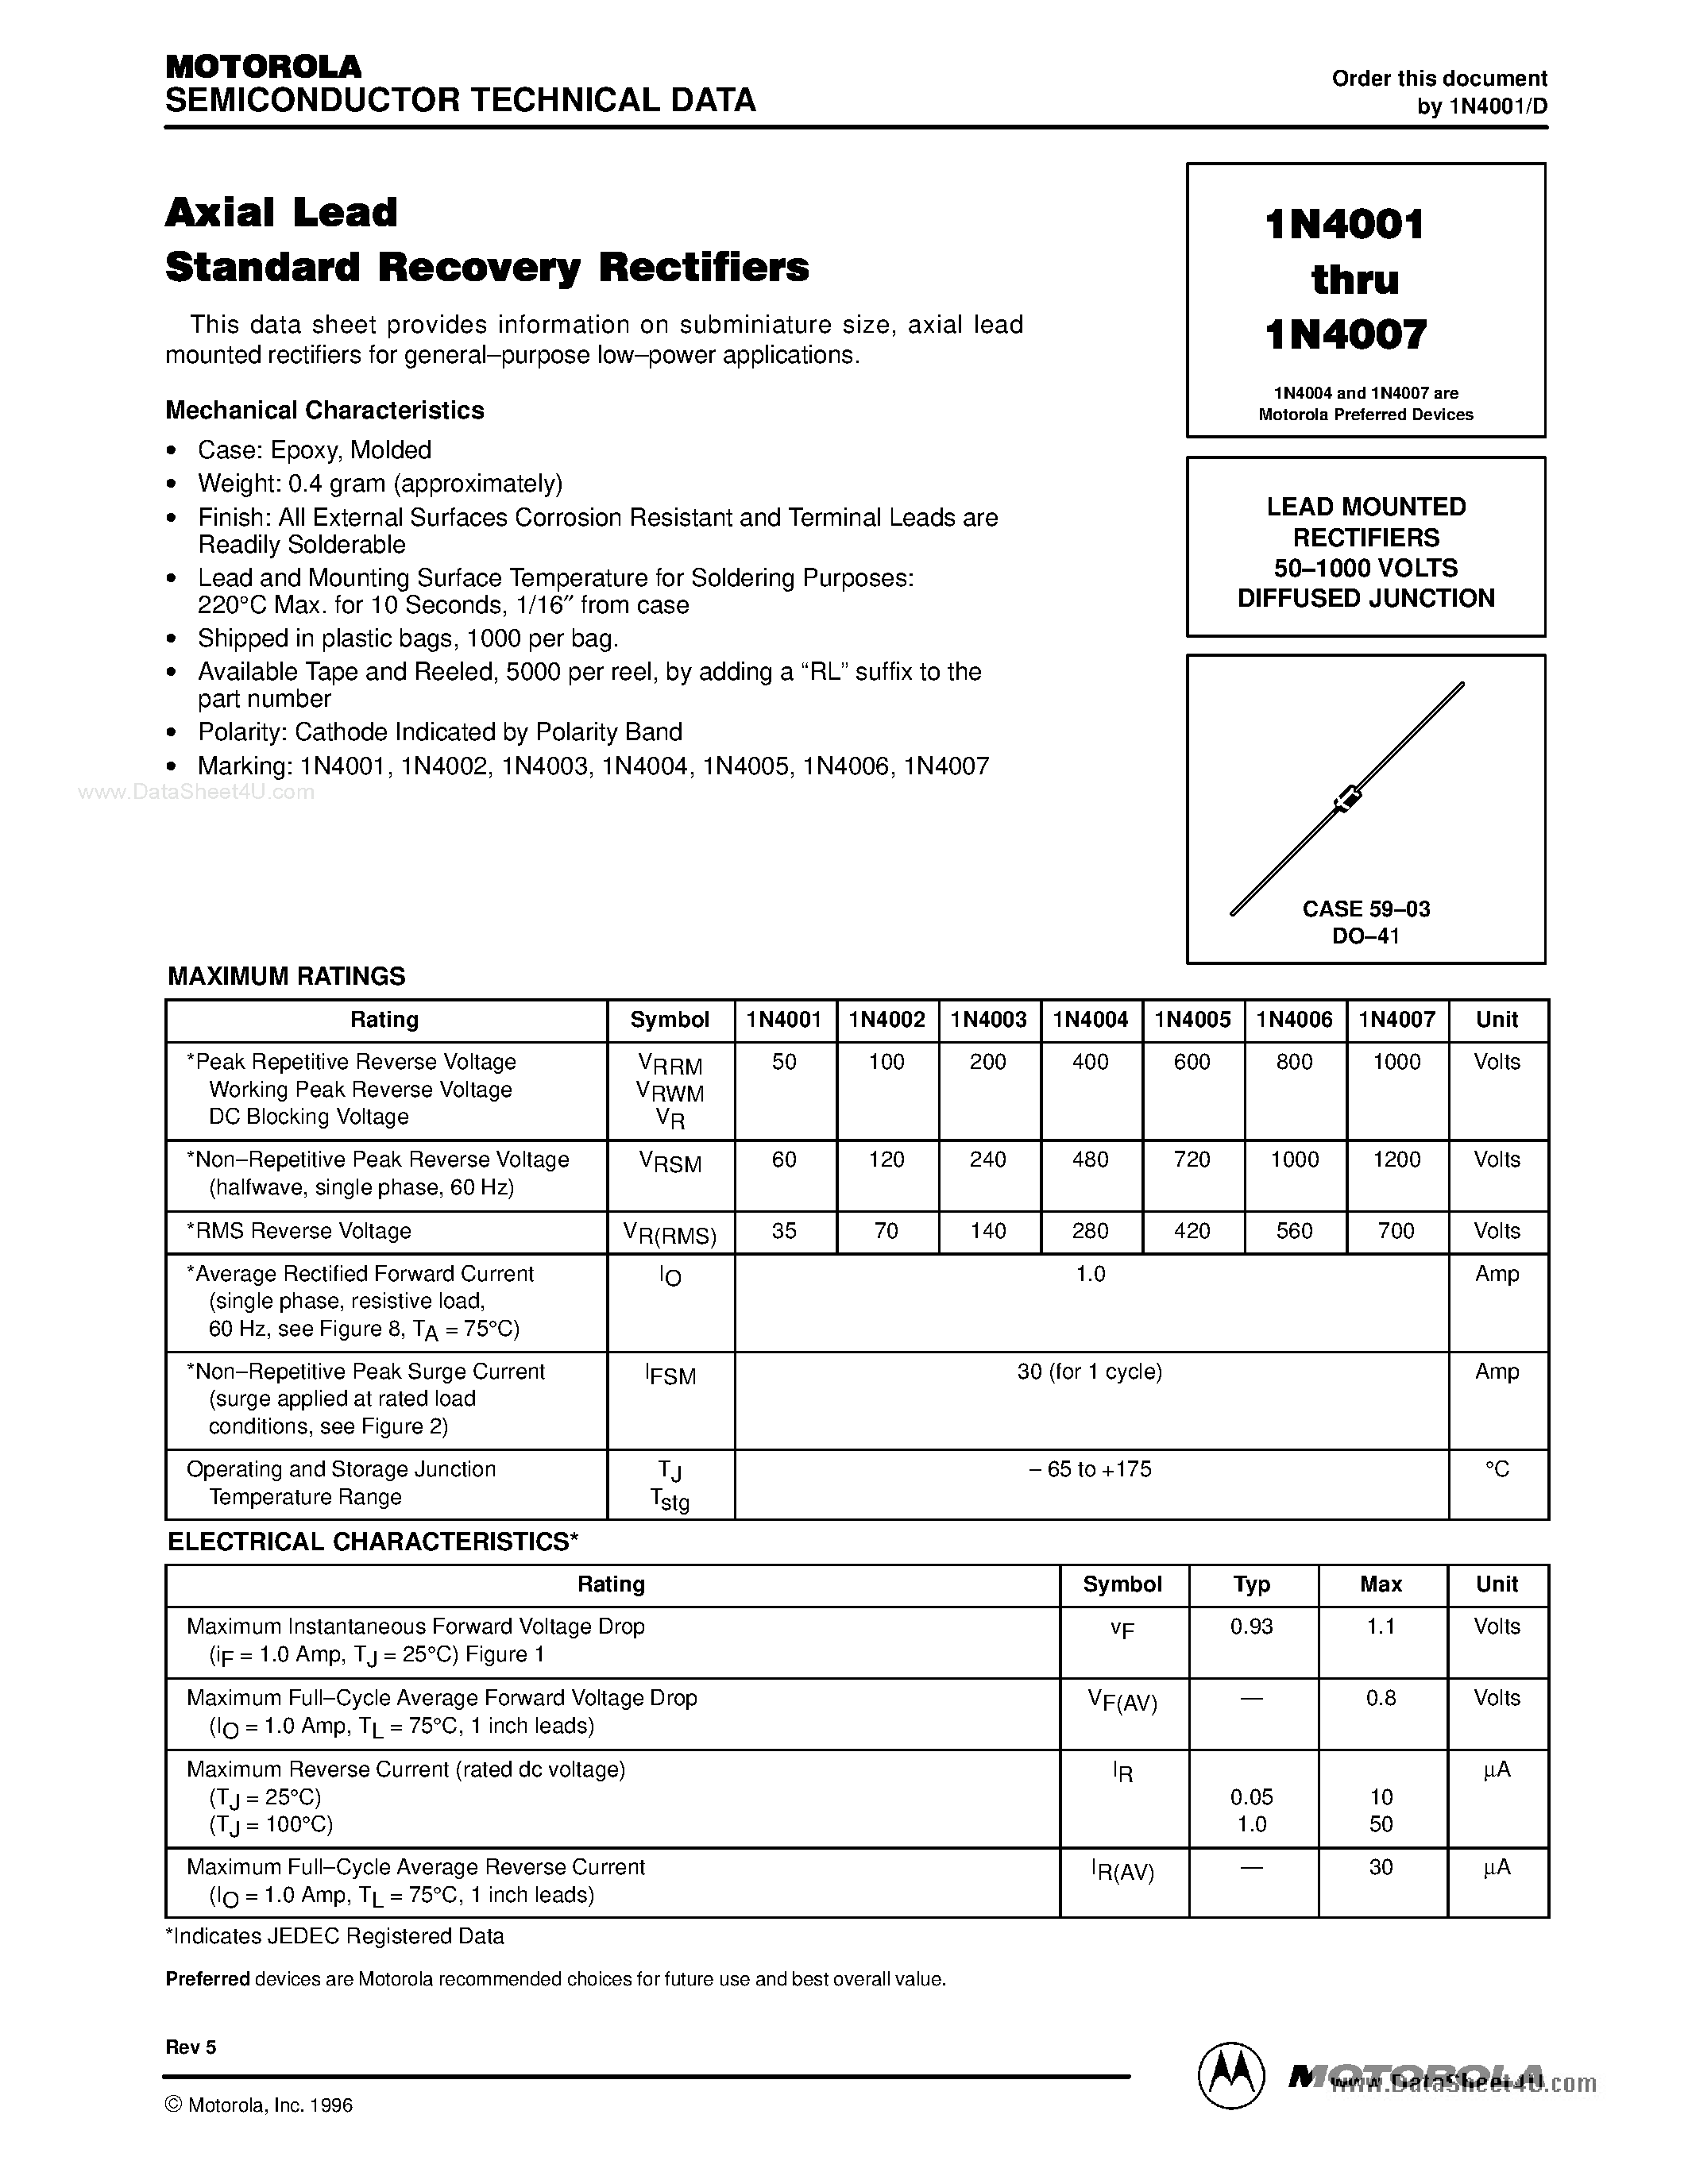 Datasheet 1N4001 - (1N4001 - 1N4007) Axial Lead Standard Recovery Rectifiers page 1